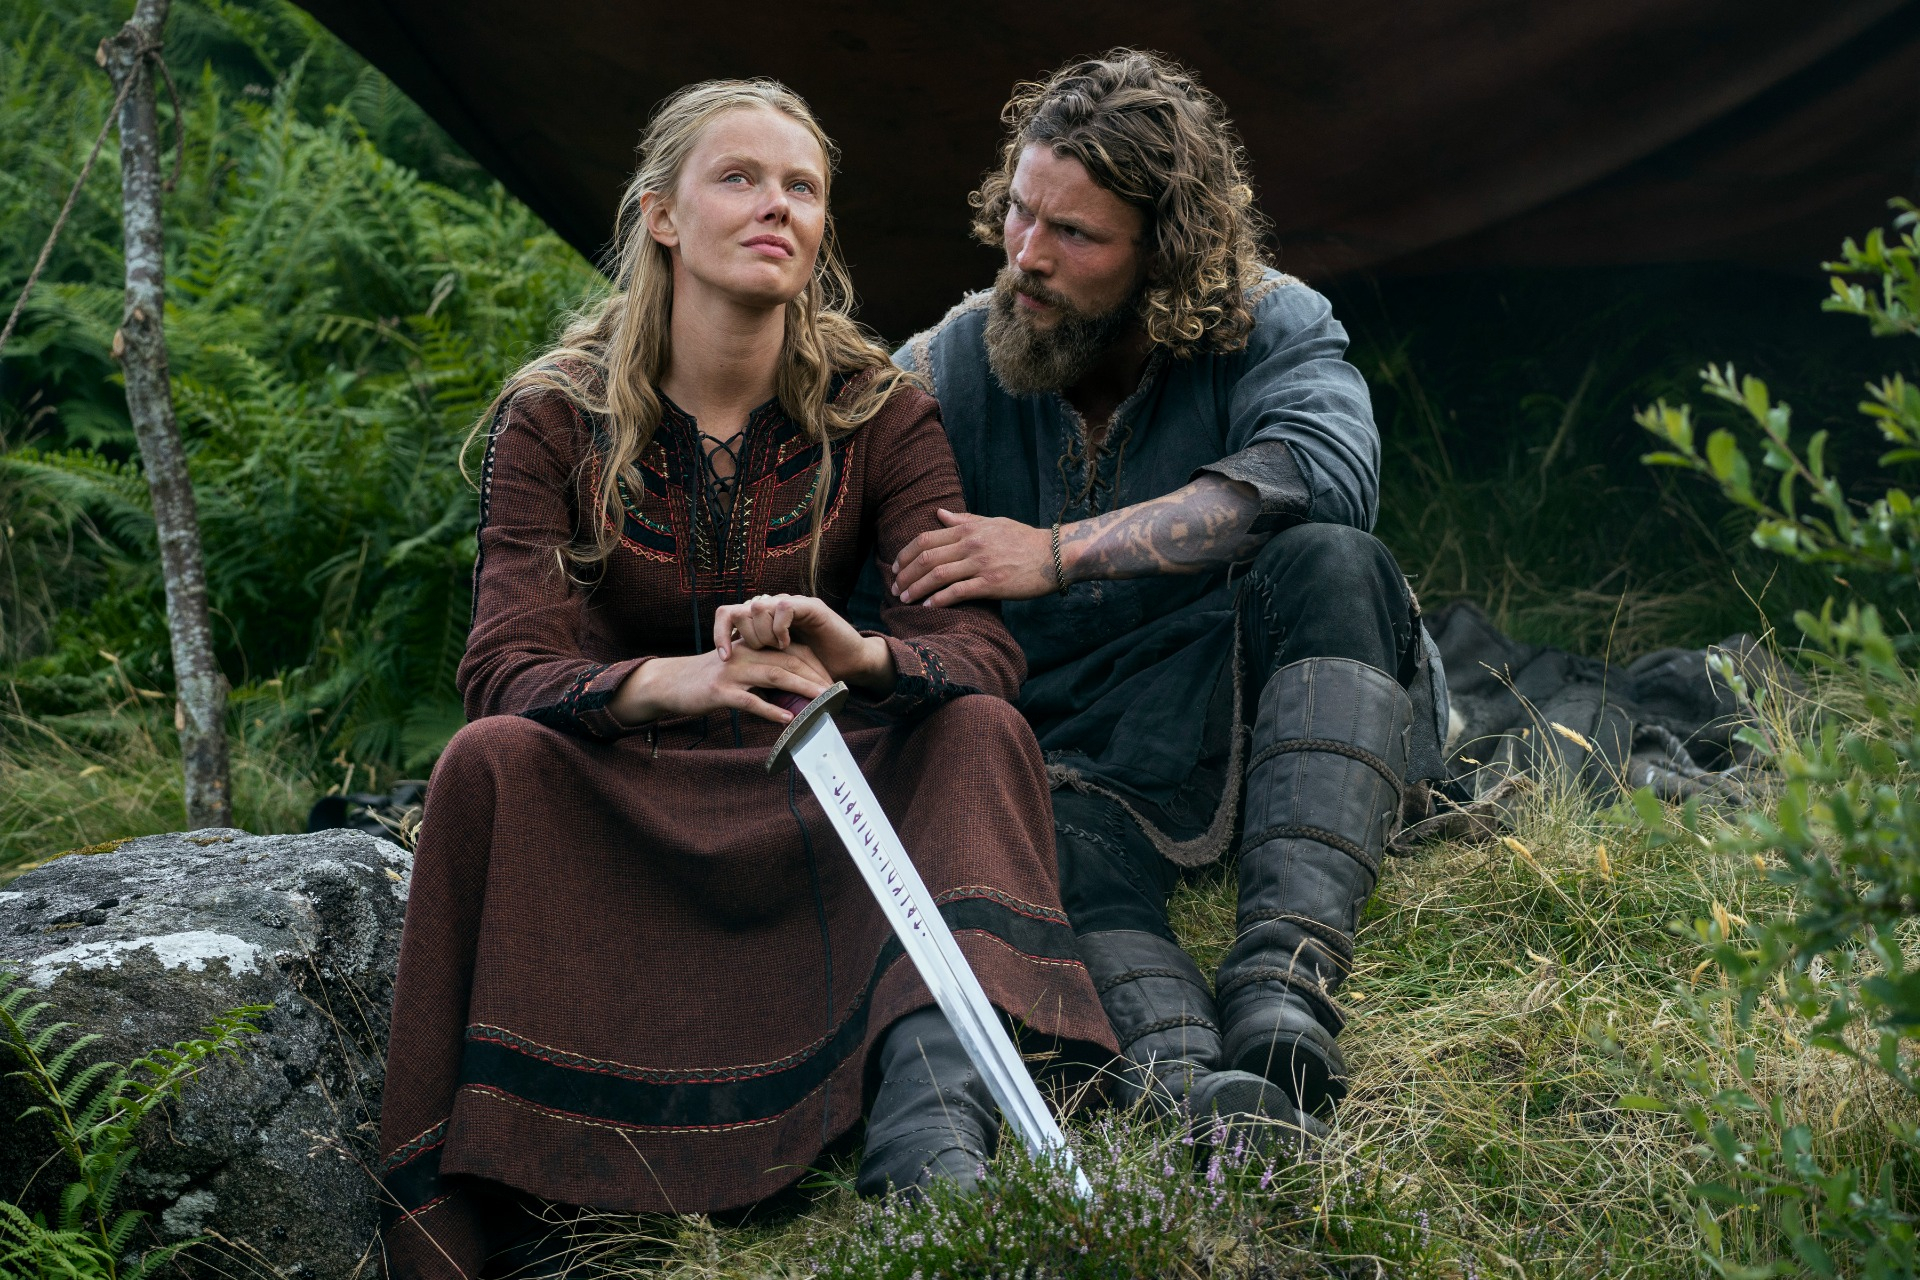 Vikings' Ep. 206 preview: Bjorn falls in love